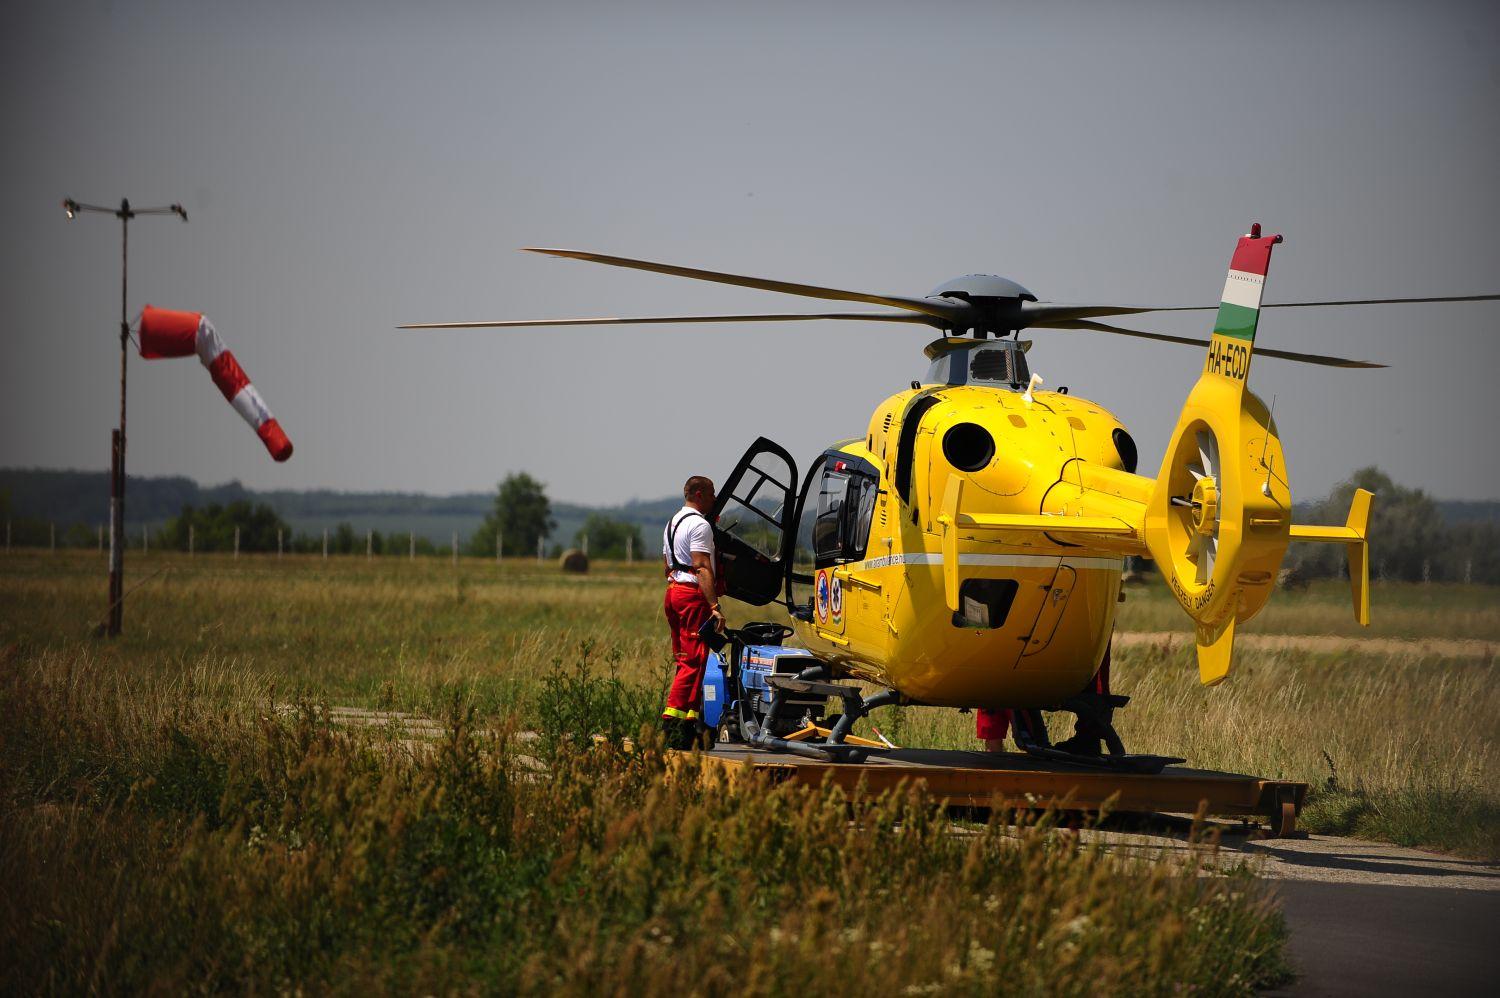 Kevesebbet emelkedhetnek fel a mentőhelikopterek, mint amennyi szükséges lenne